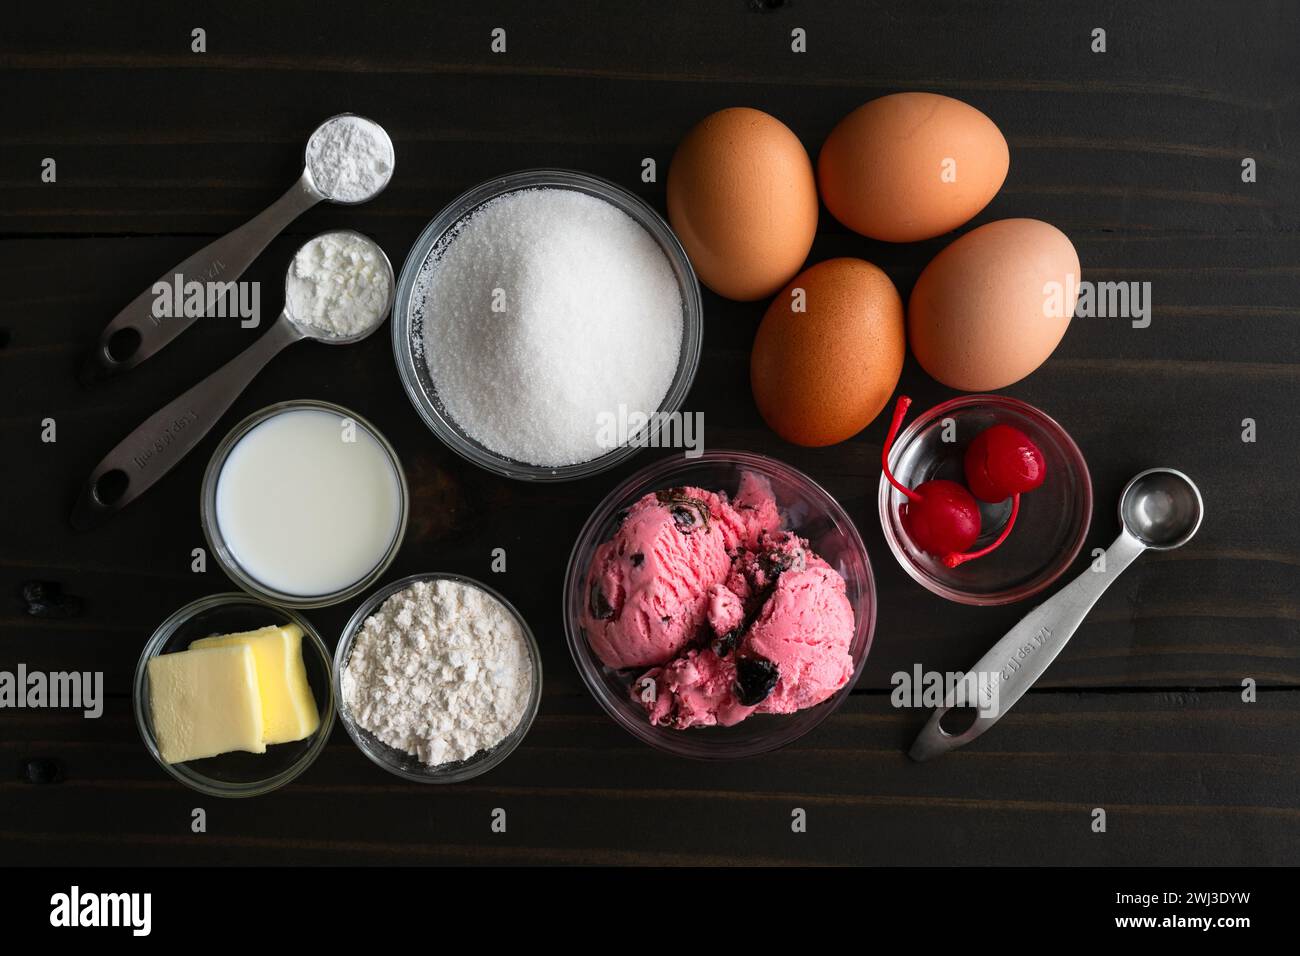 Zutaten zur Herstellung von Miniatur-Versionen von gebackenem Alaska: Eis, Eier, Zucker und Zutaten für Biskuitkuchen und Meringue für Mini-Desserts Stockfoto